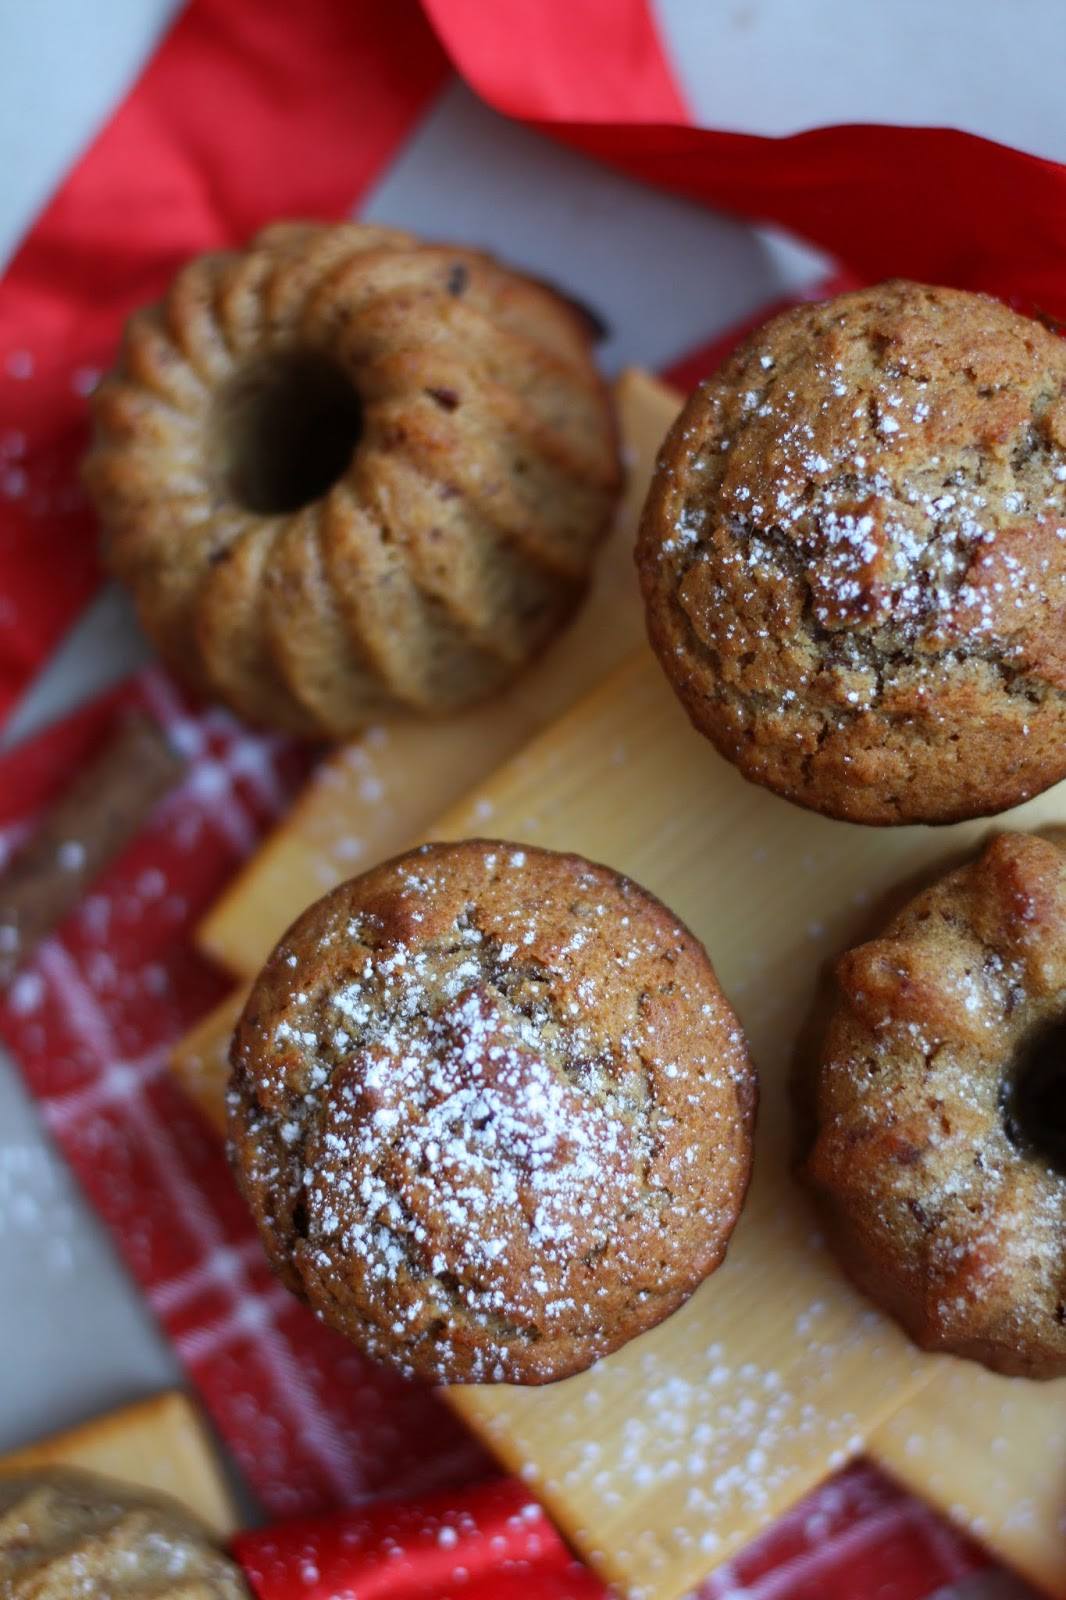 taatelimuffinssit taateli muffinssi joulu leivonta mallaspulla